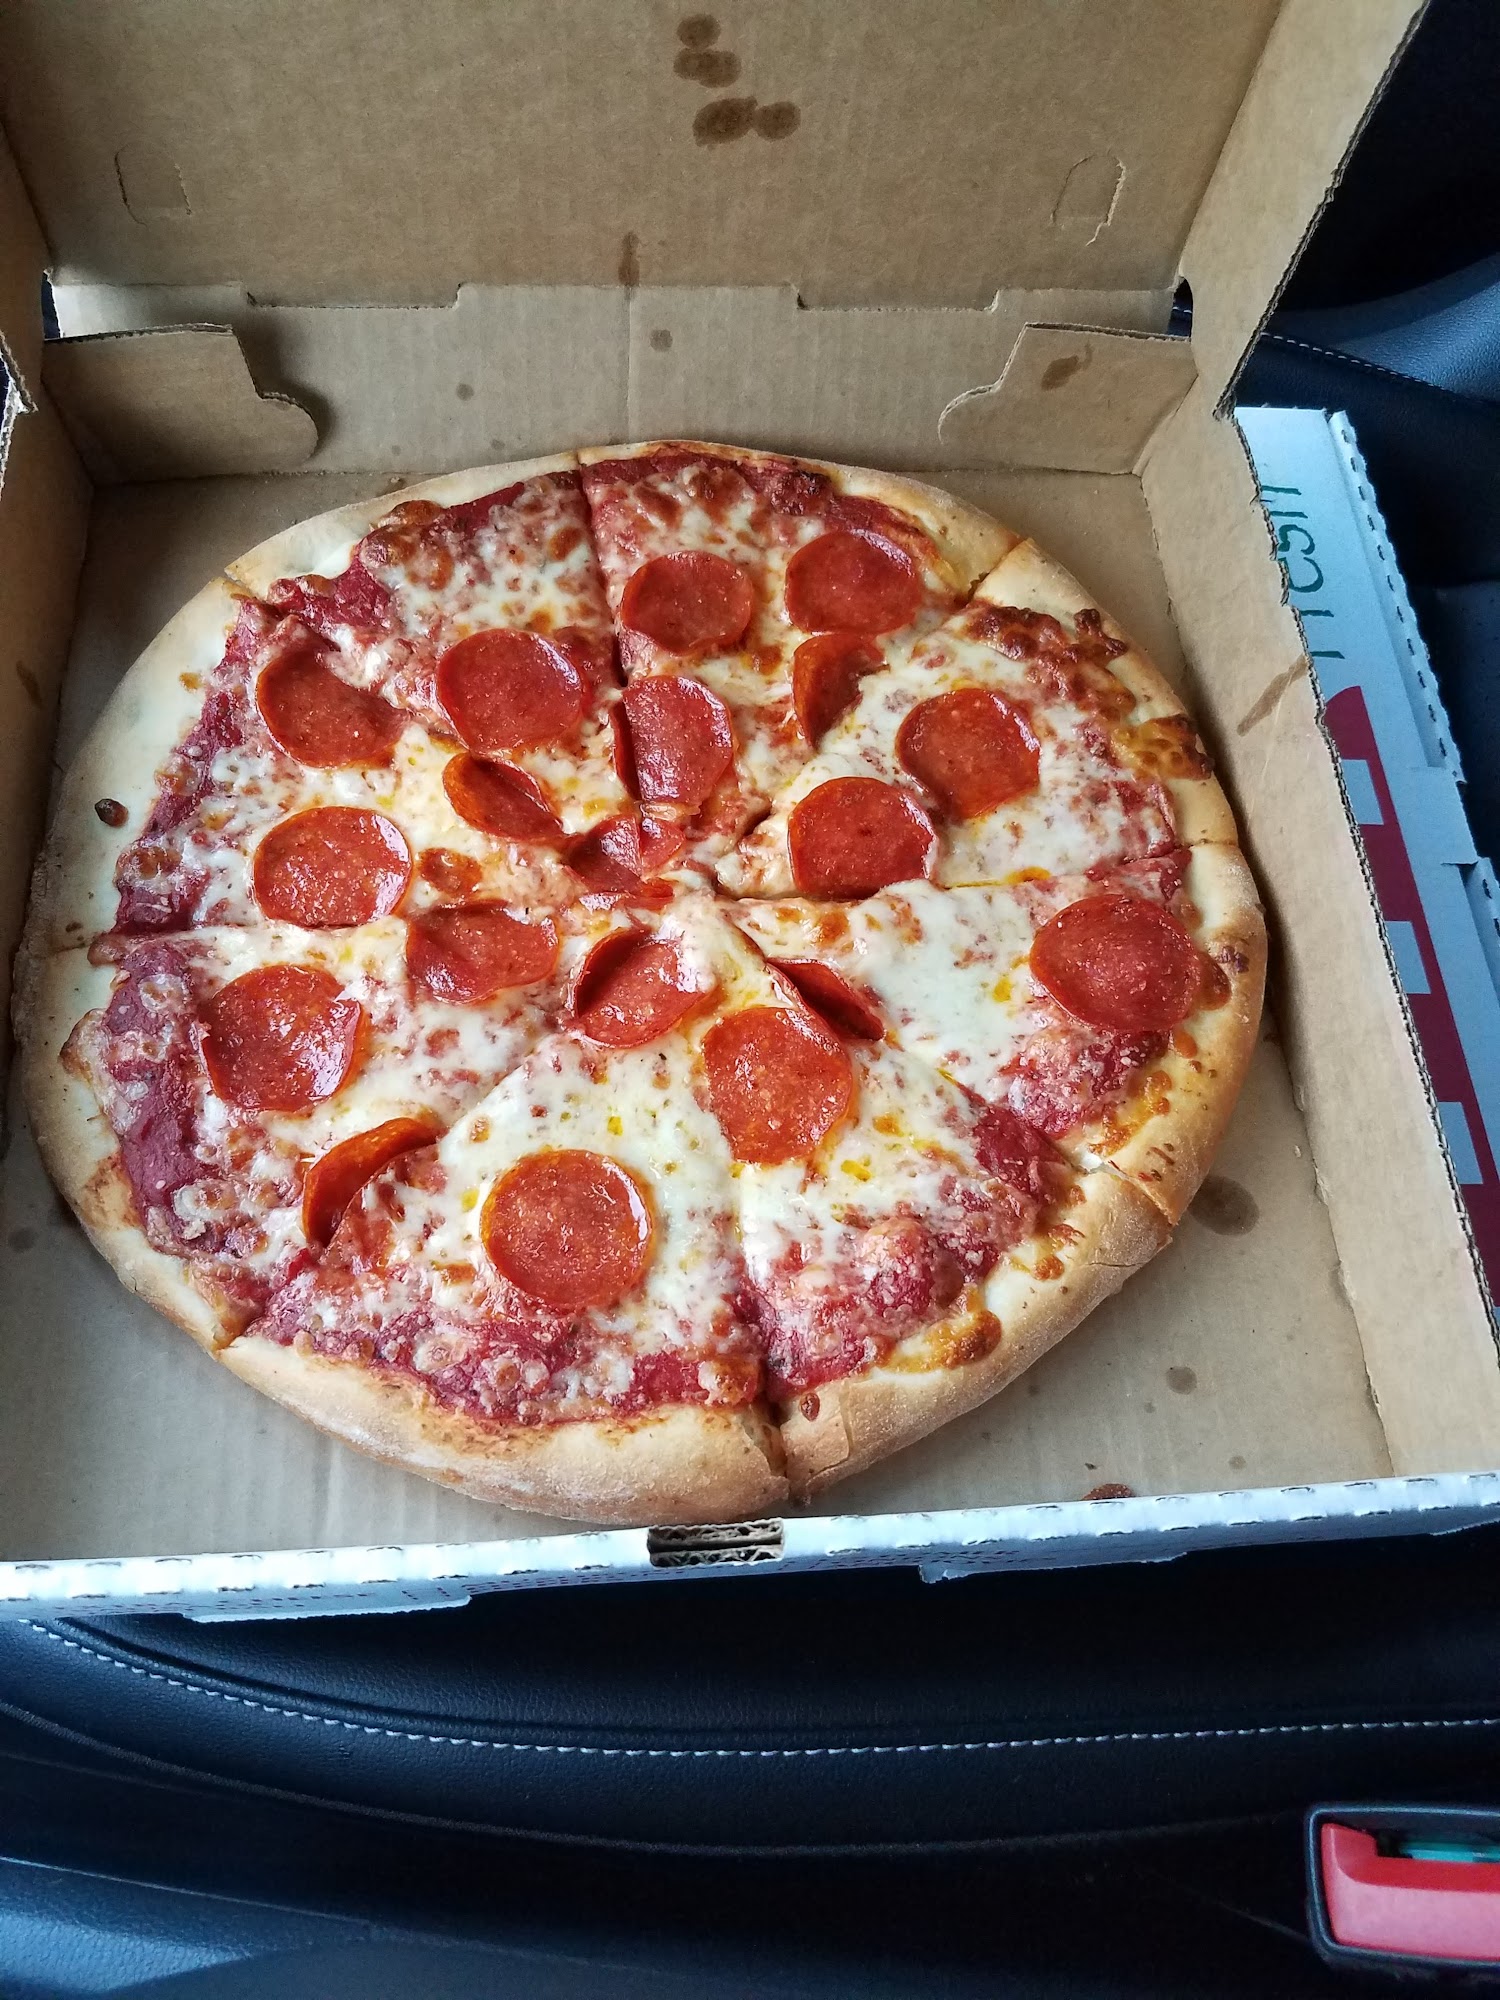 3 D's Pizza